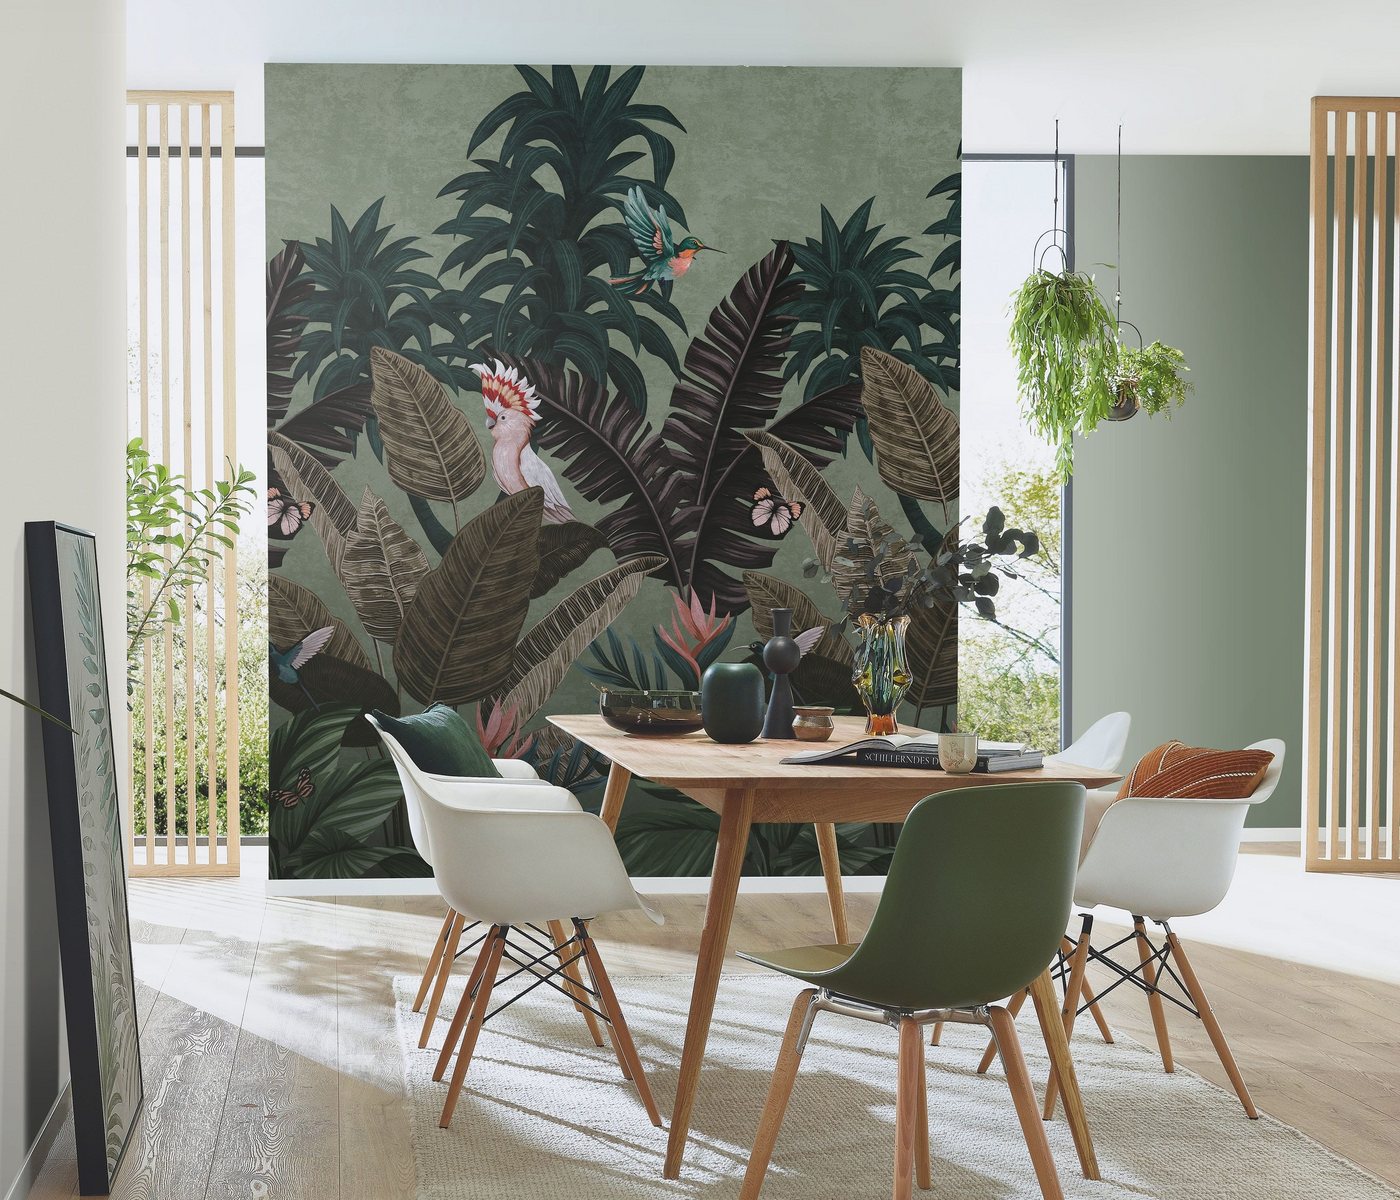 Newroom Vliestapete, [ 1,5 x 2,7 m ] großzügiges Motiv - kein wiederkehrendes Muster - Fototapete Wandbild Dschungel Palmen Blätter Made in Germany von Newroom